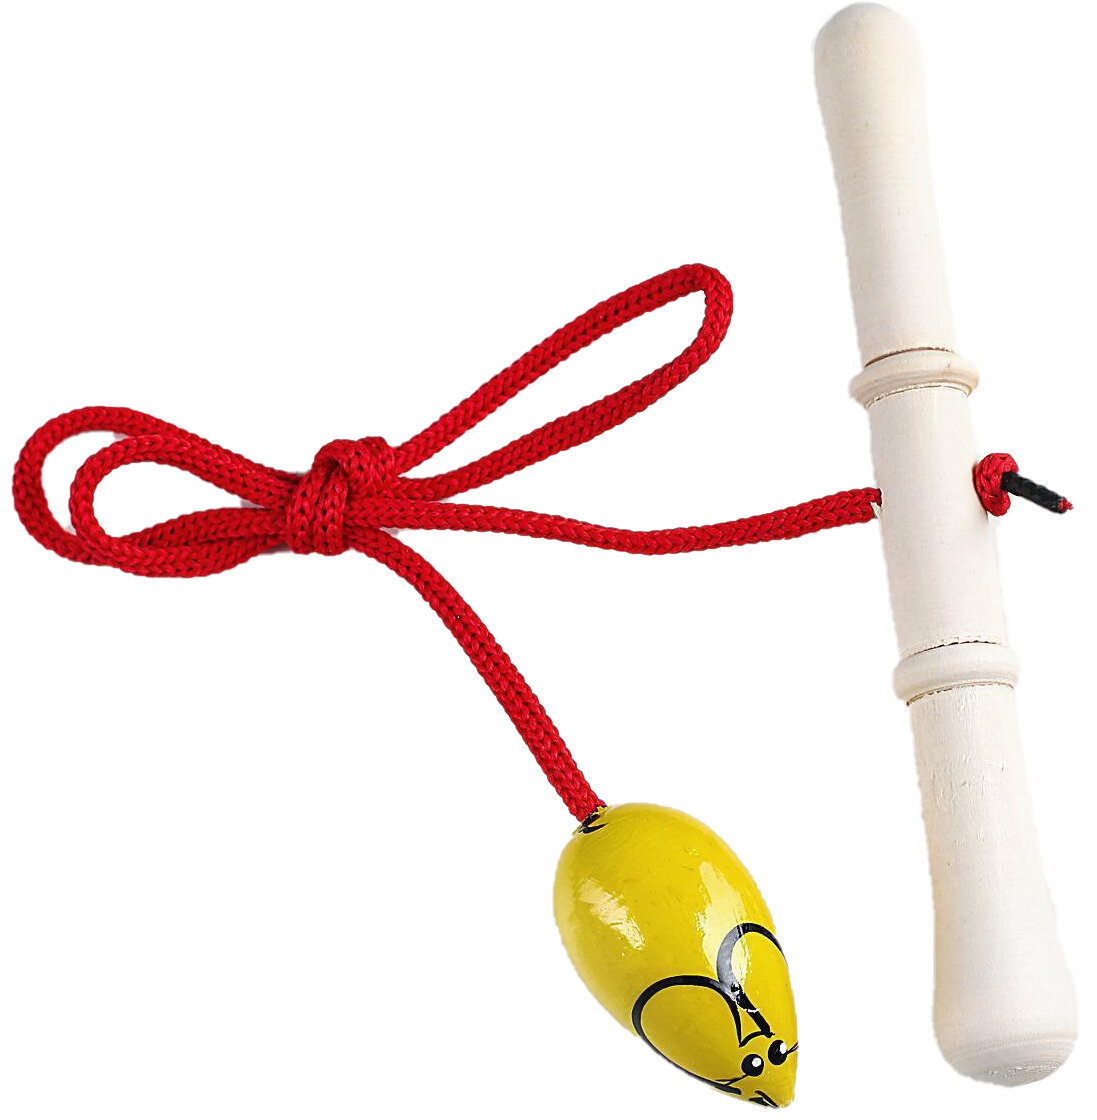 Деревянная игрушка "Достань мышку", подвижная детская игра на развитие ловкости и координации движений